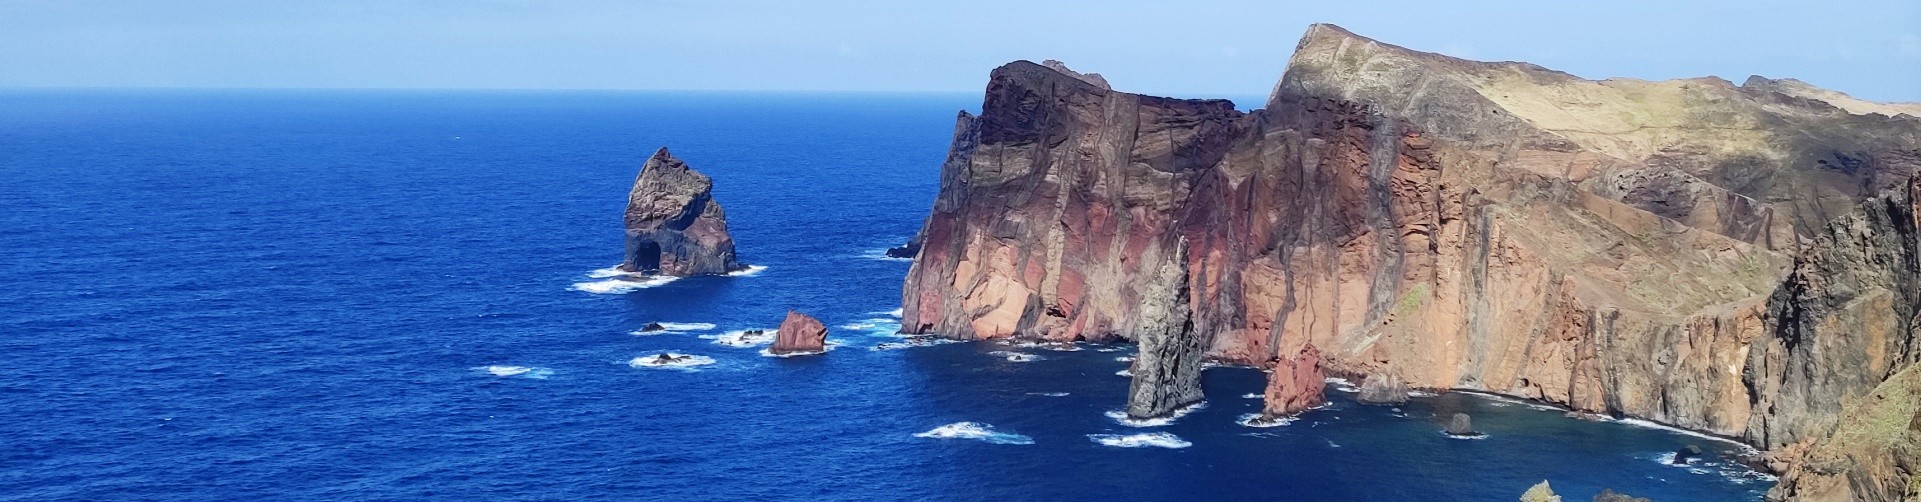 Miradouro da Ponta do Rosto Caniçal Madeira